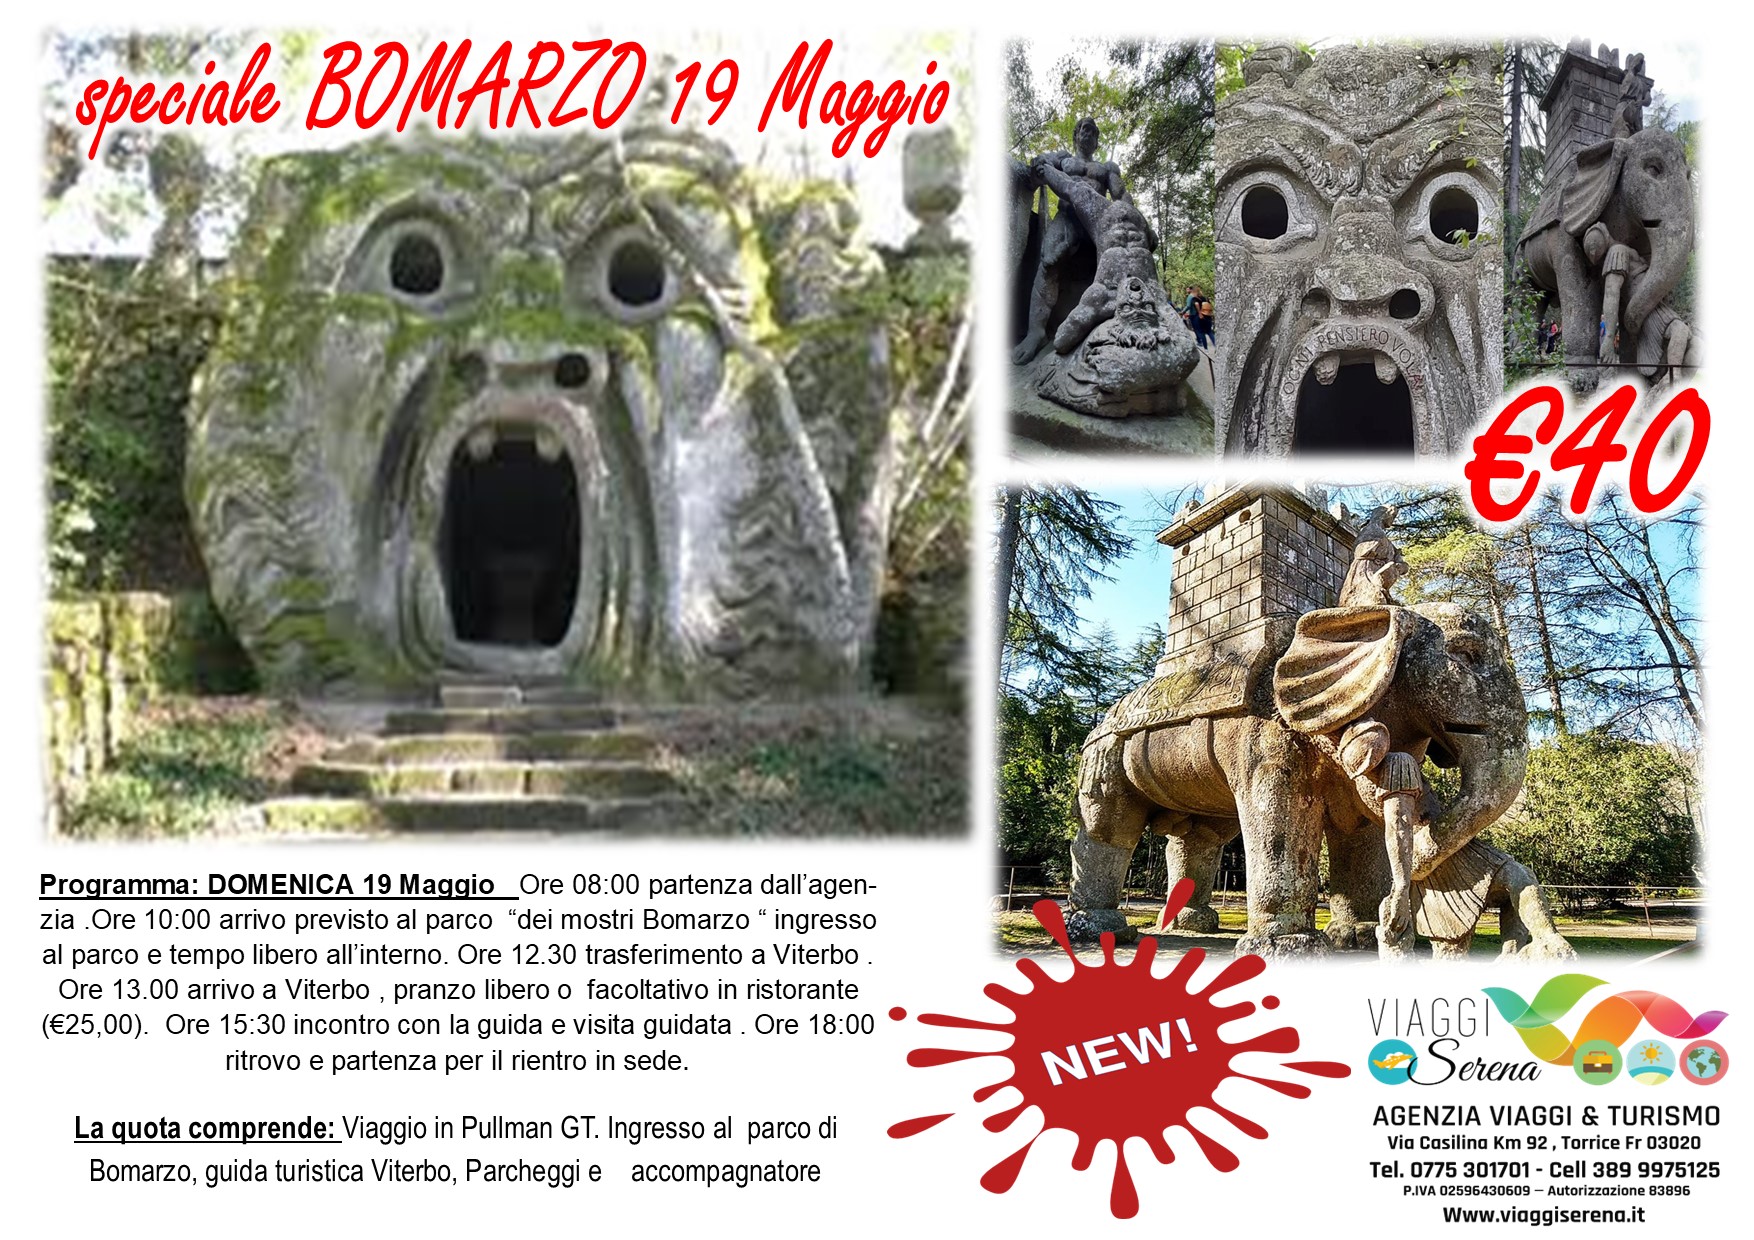 Viaggi di gruppo: Parco dei Mostri “Bomarzo” 19 Maggio €40 ,00